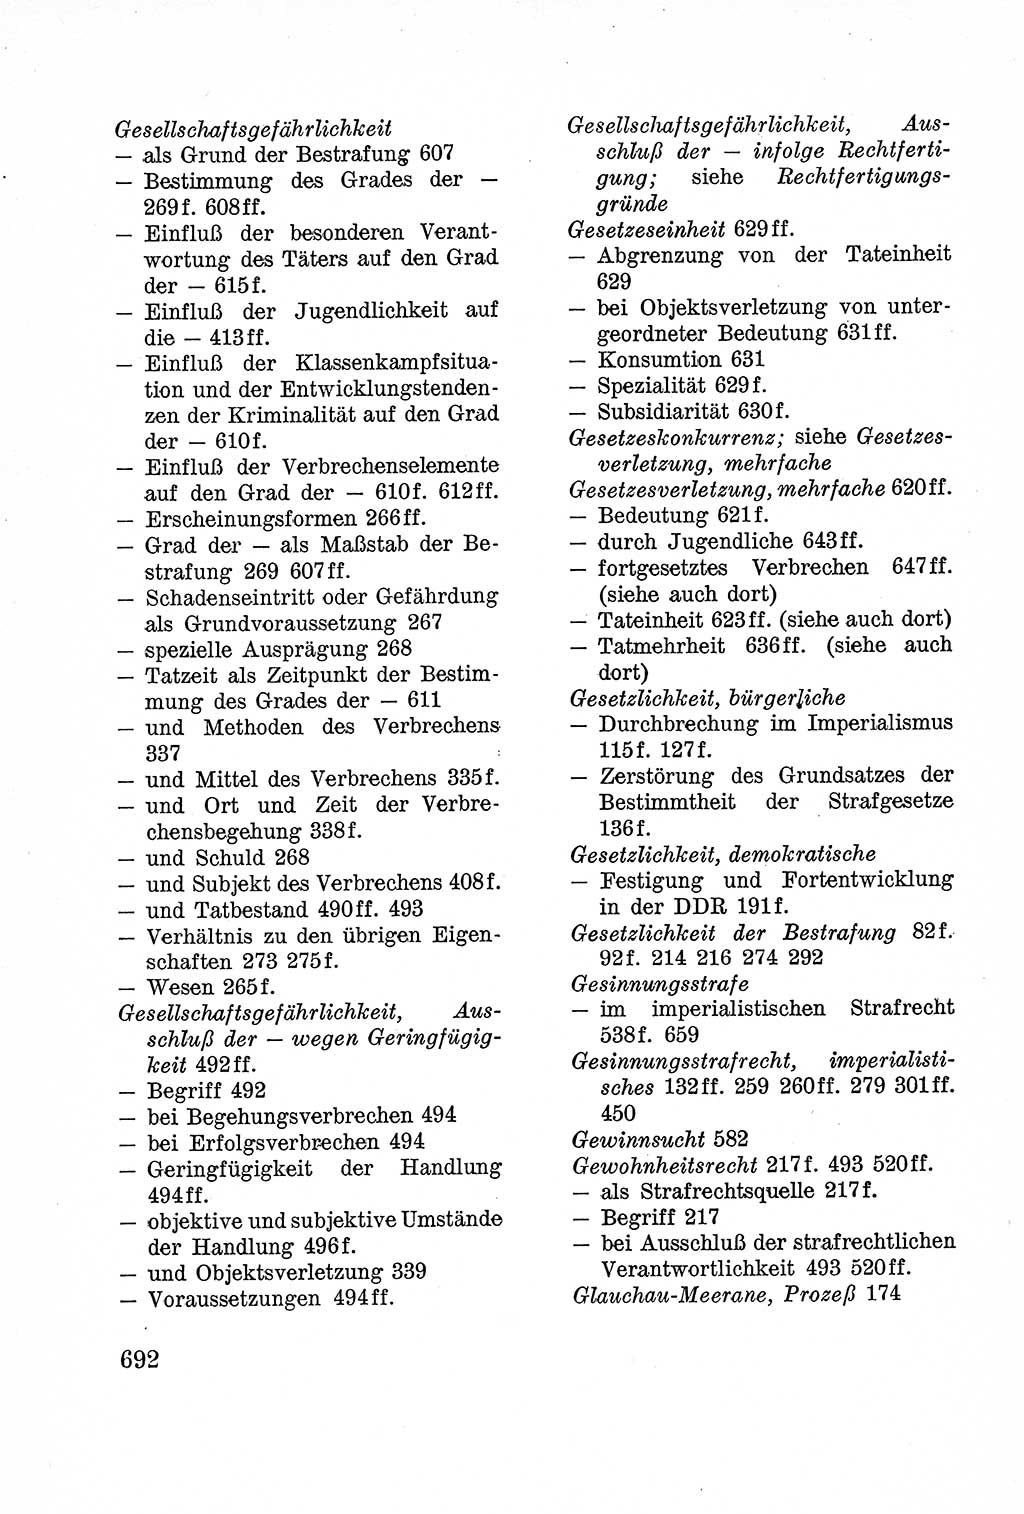 Lehrbuch des Strafrechts der Deutschen Demokratischen Republik (DDR), Allgemeiner Teil 1957, Seite 692 (Lb. Strafr. DDR AT 1957, S. 692)